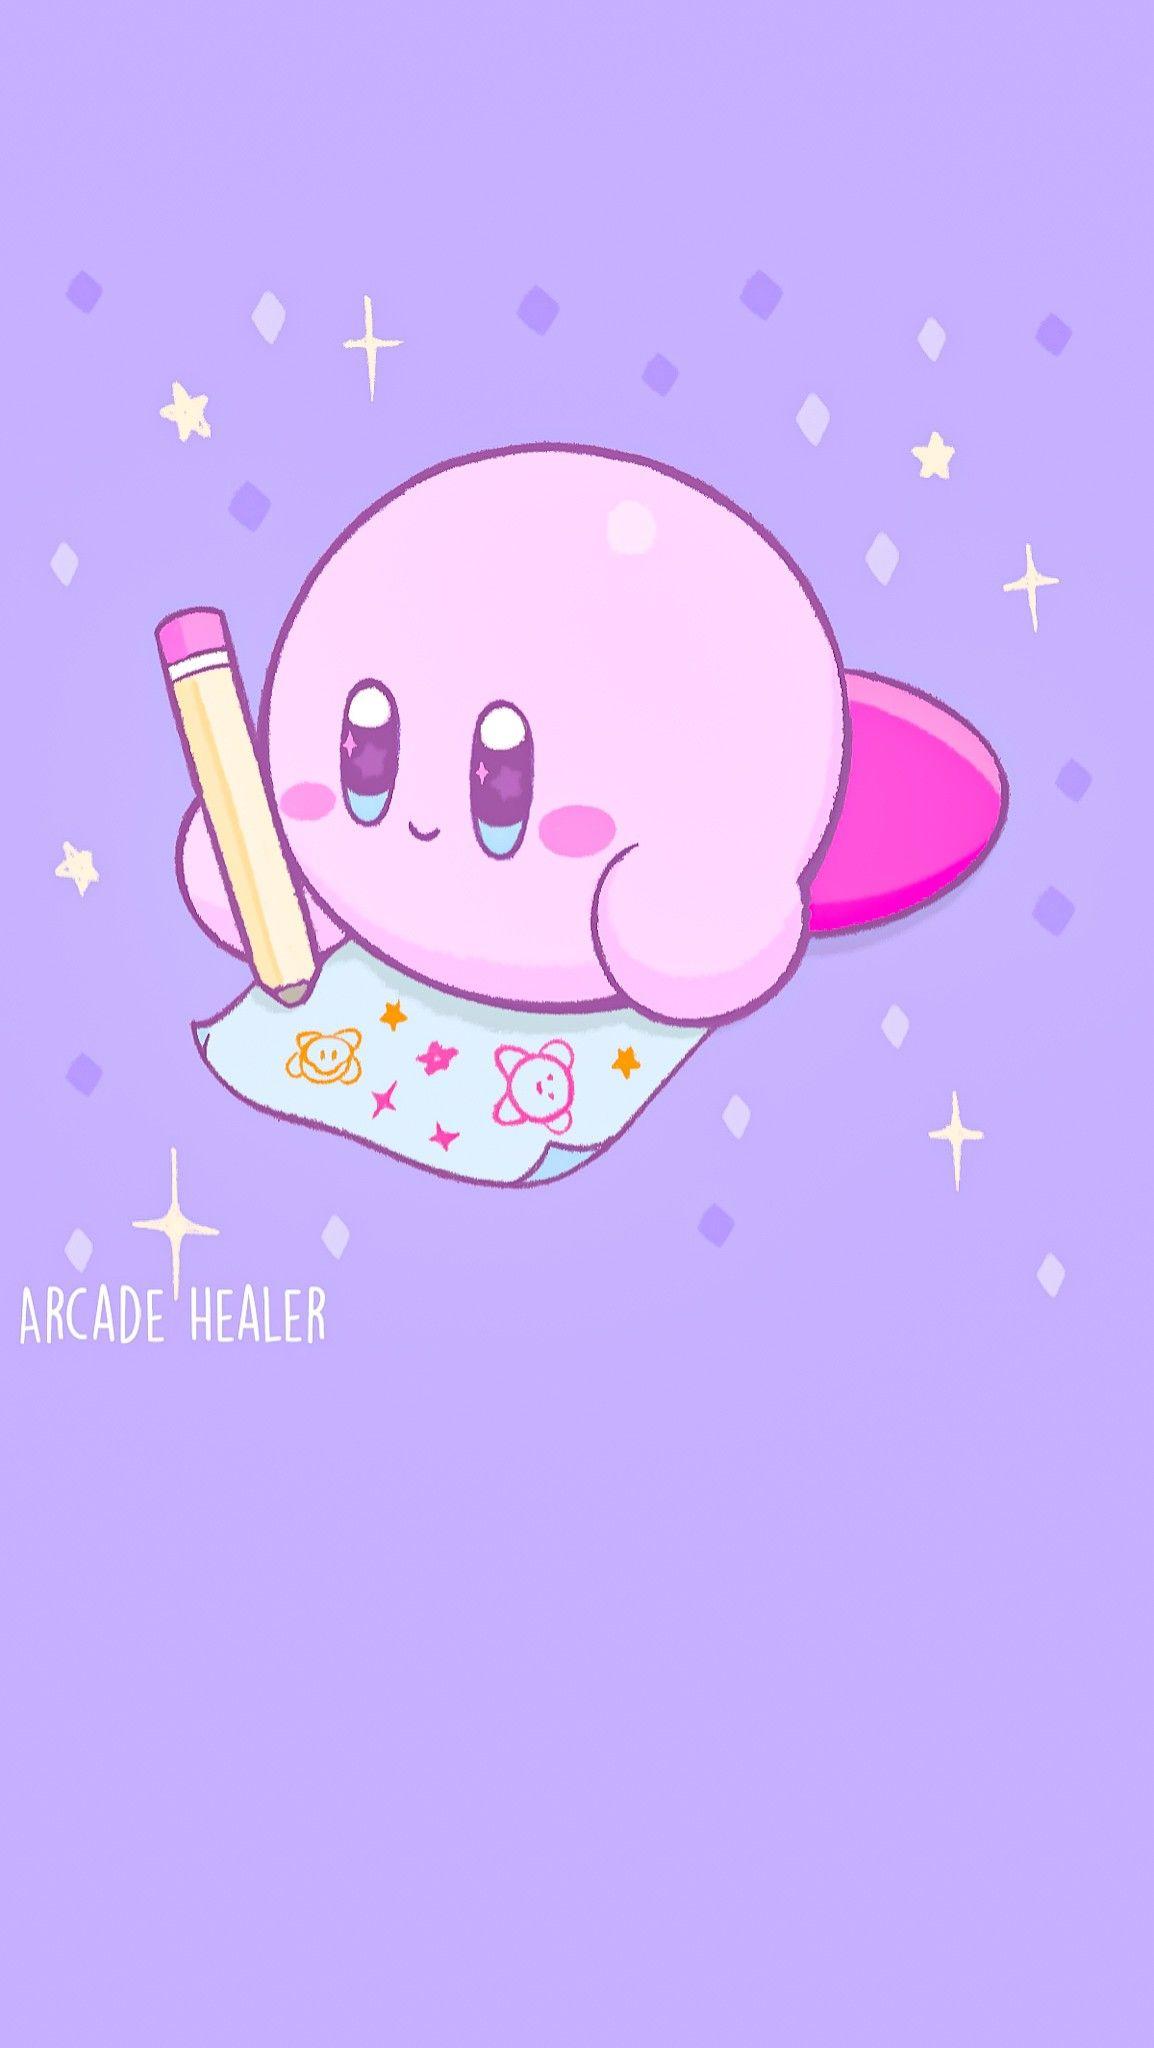 Màu sắc tươi sáng, họa tiết đáng yêu - hãy cùng xem hình nền Kirby cực kì dễ thương này để thấy một sự kết hợp ăn ý giữa nghệ thuật và vui nhộn.